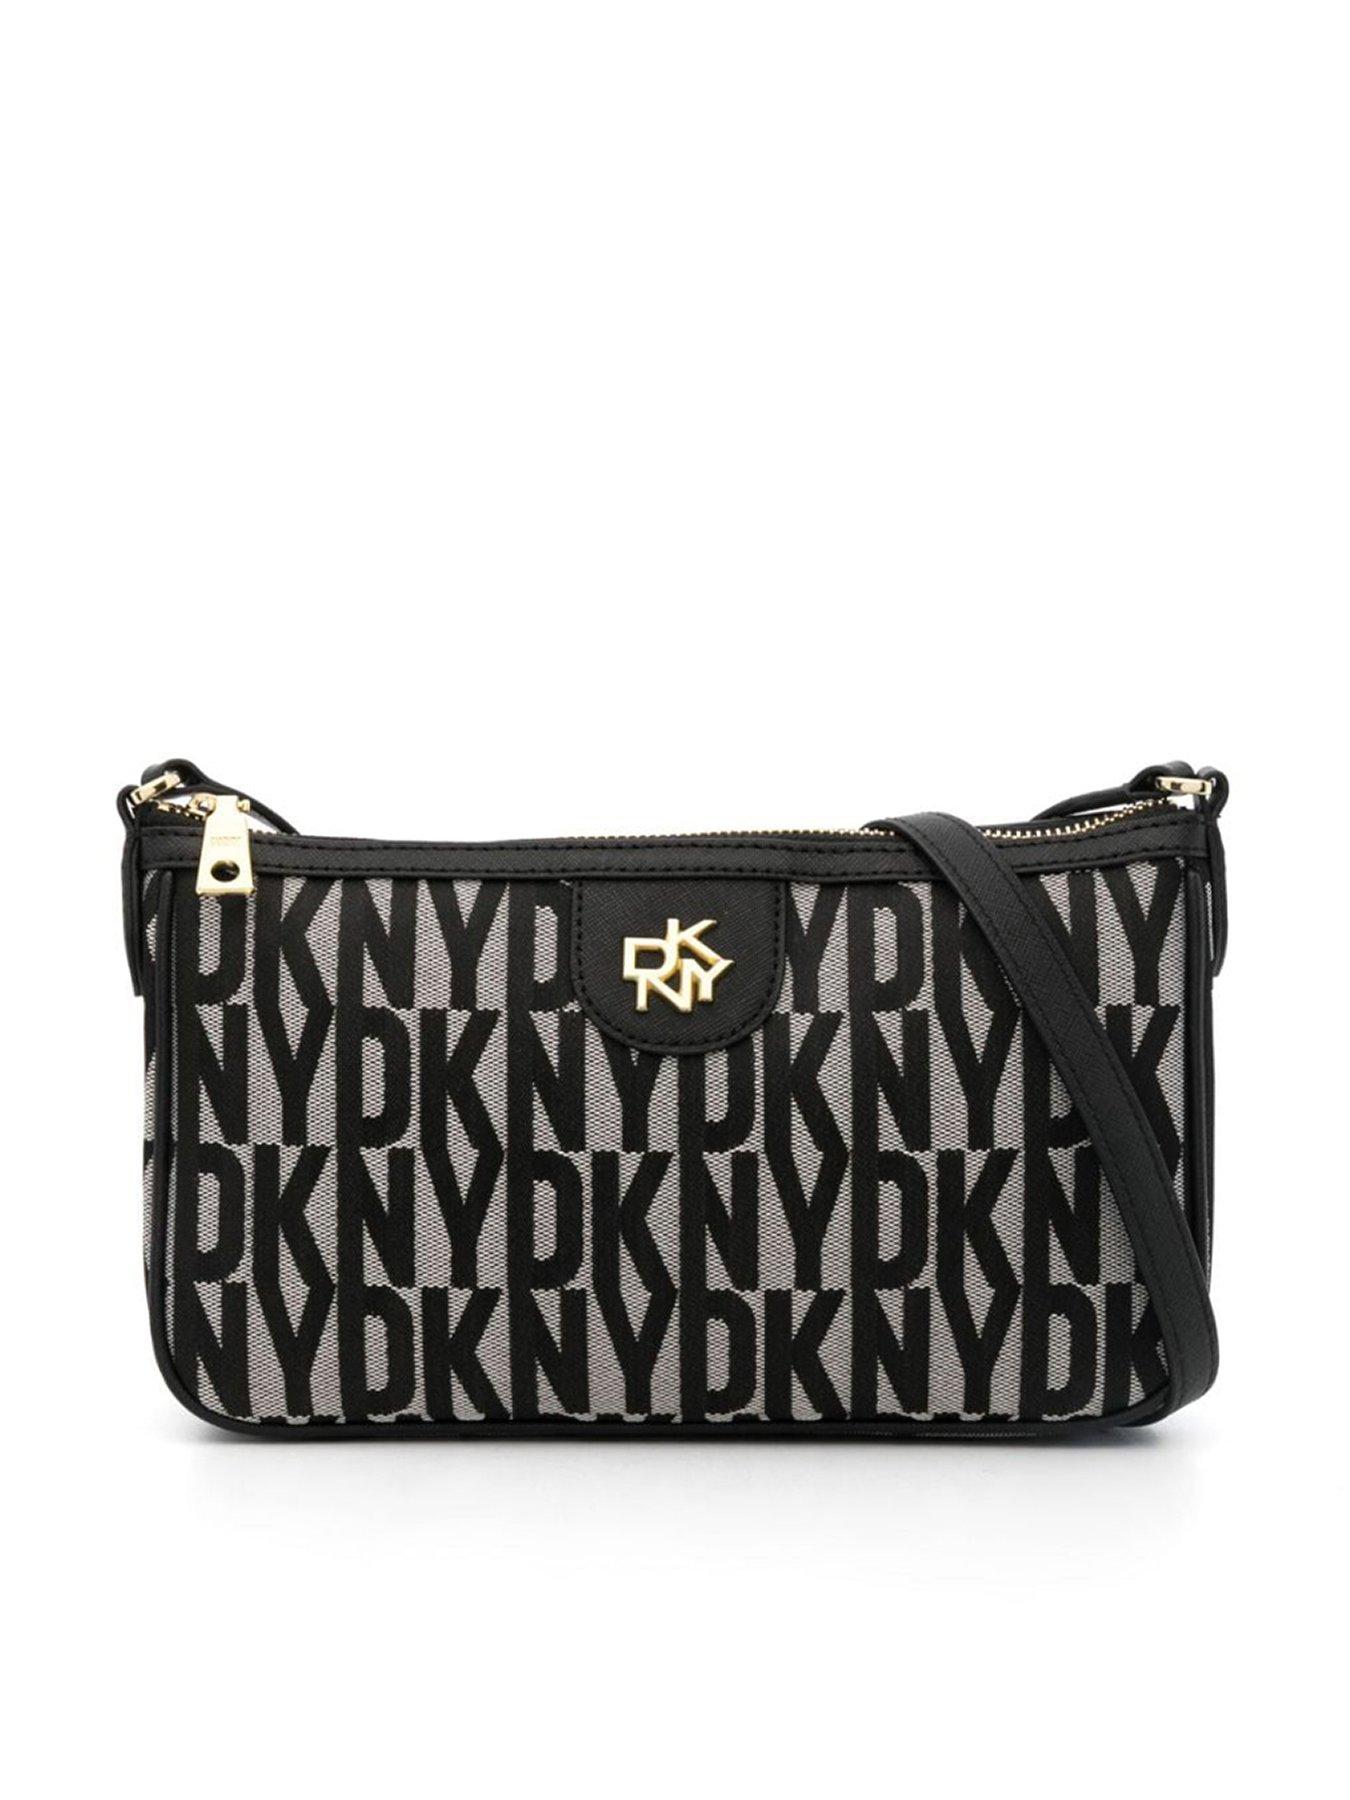 Dkny Handbags Sale | semashow.com